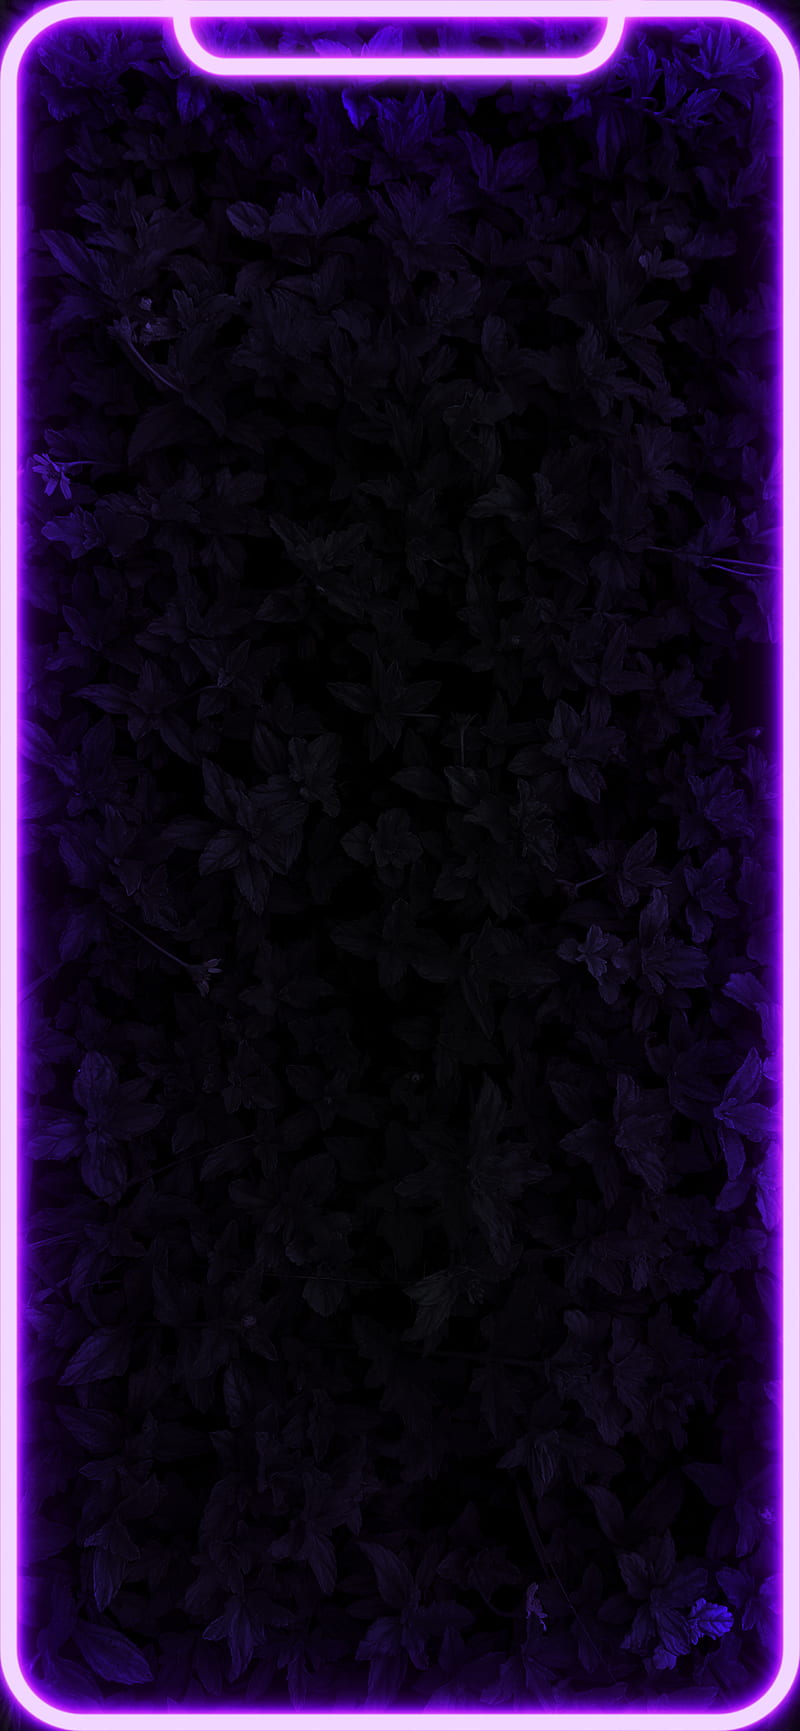 Download New York Sky Neon Purple Iphone Wallpaper | Wallpapers.com